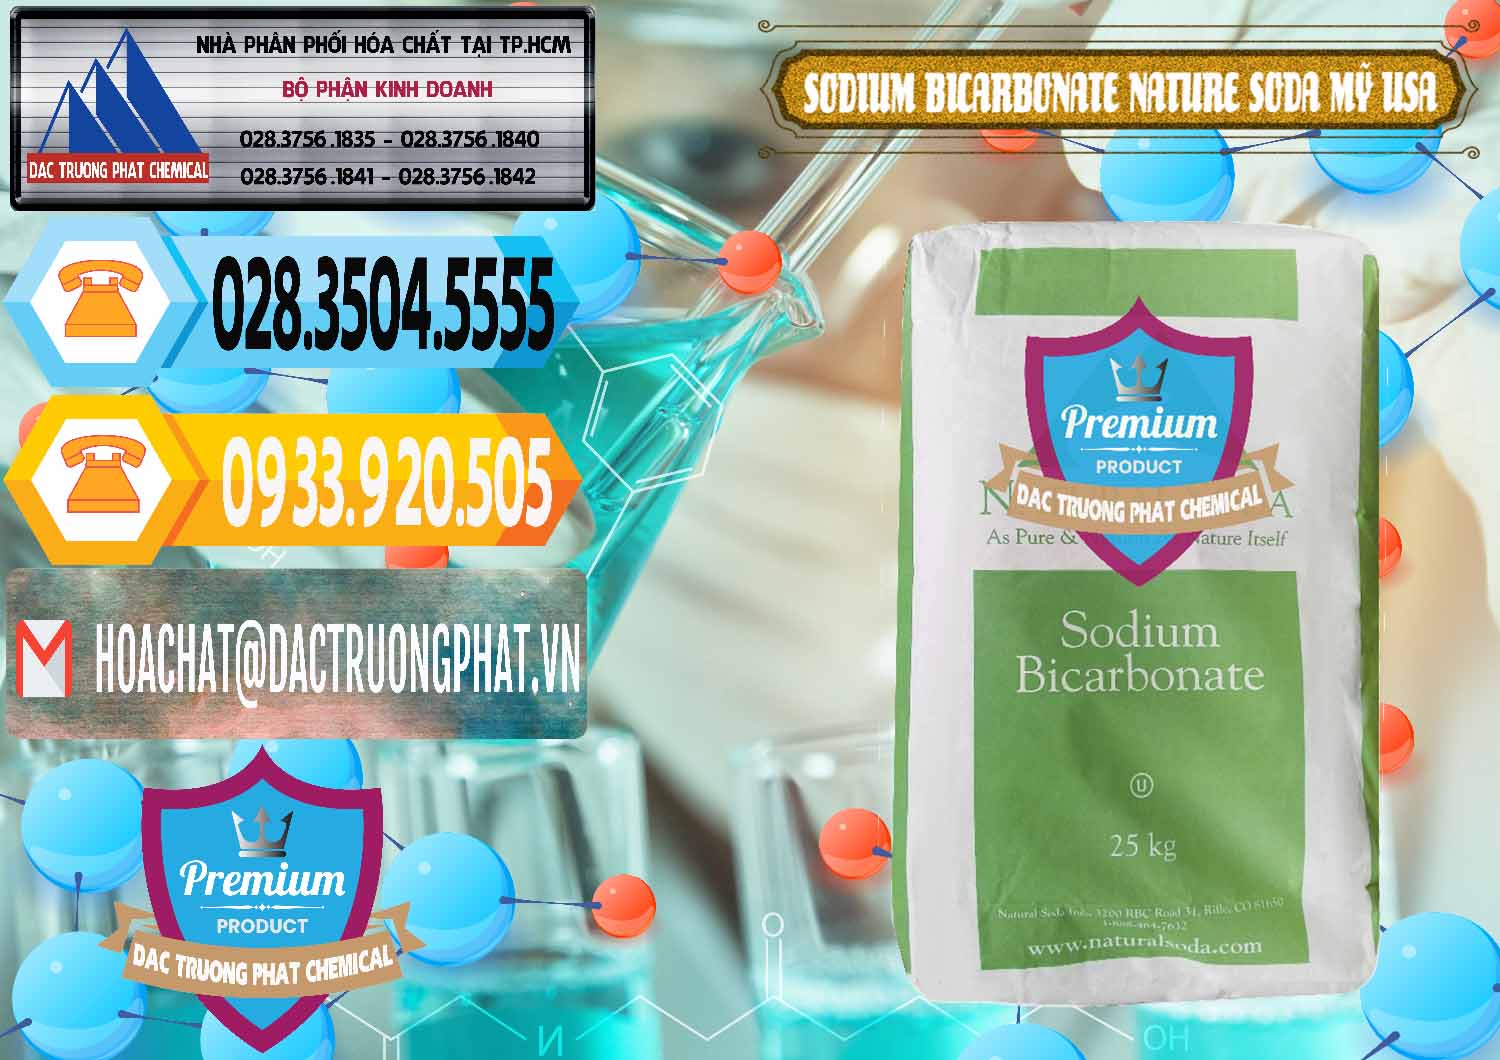 Đơn vị chuyên kinh doanh ( bán ) Sodium Bicarbonate – Bicar NaHCO3 Food Grade Nature Soda Mỹ USA - 0256 - Nơi chuyên cung cấp và kinh doanh hóa chất tại TP.HCM - hoachattayrua.net